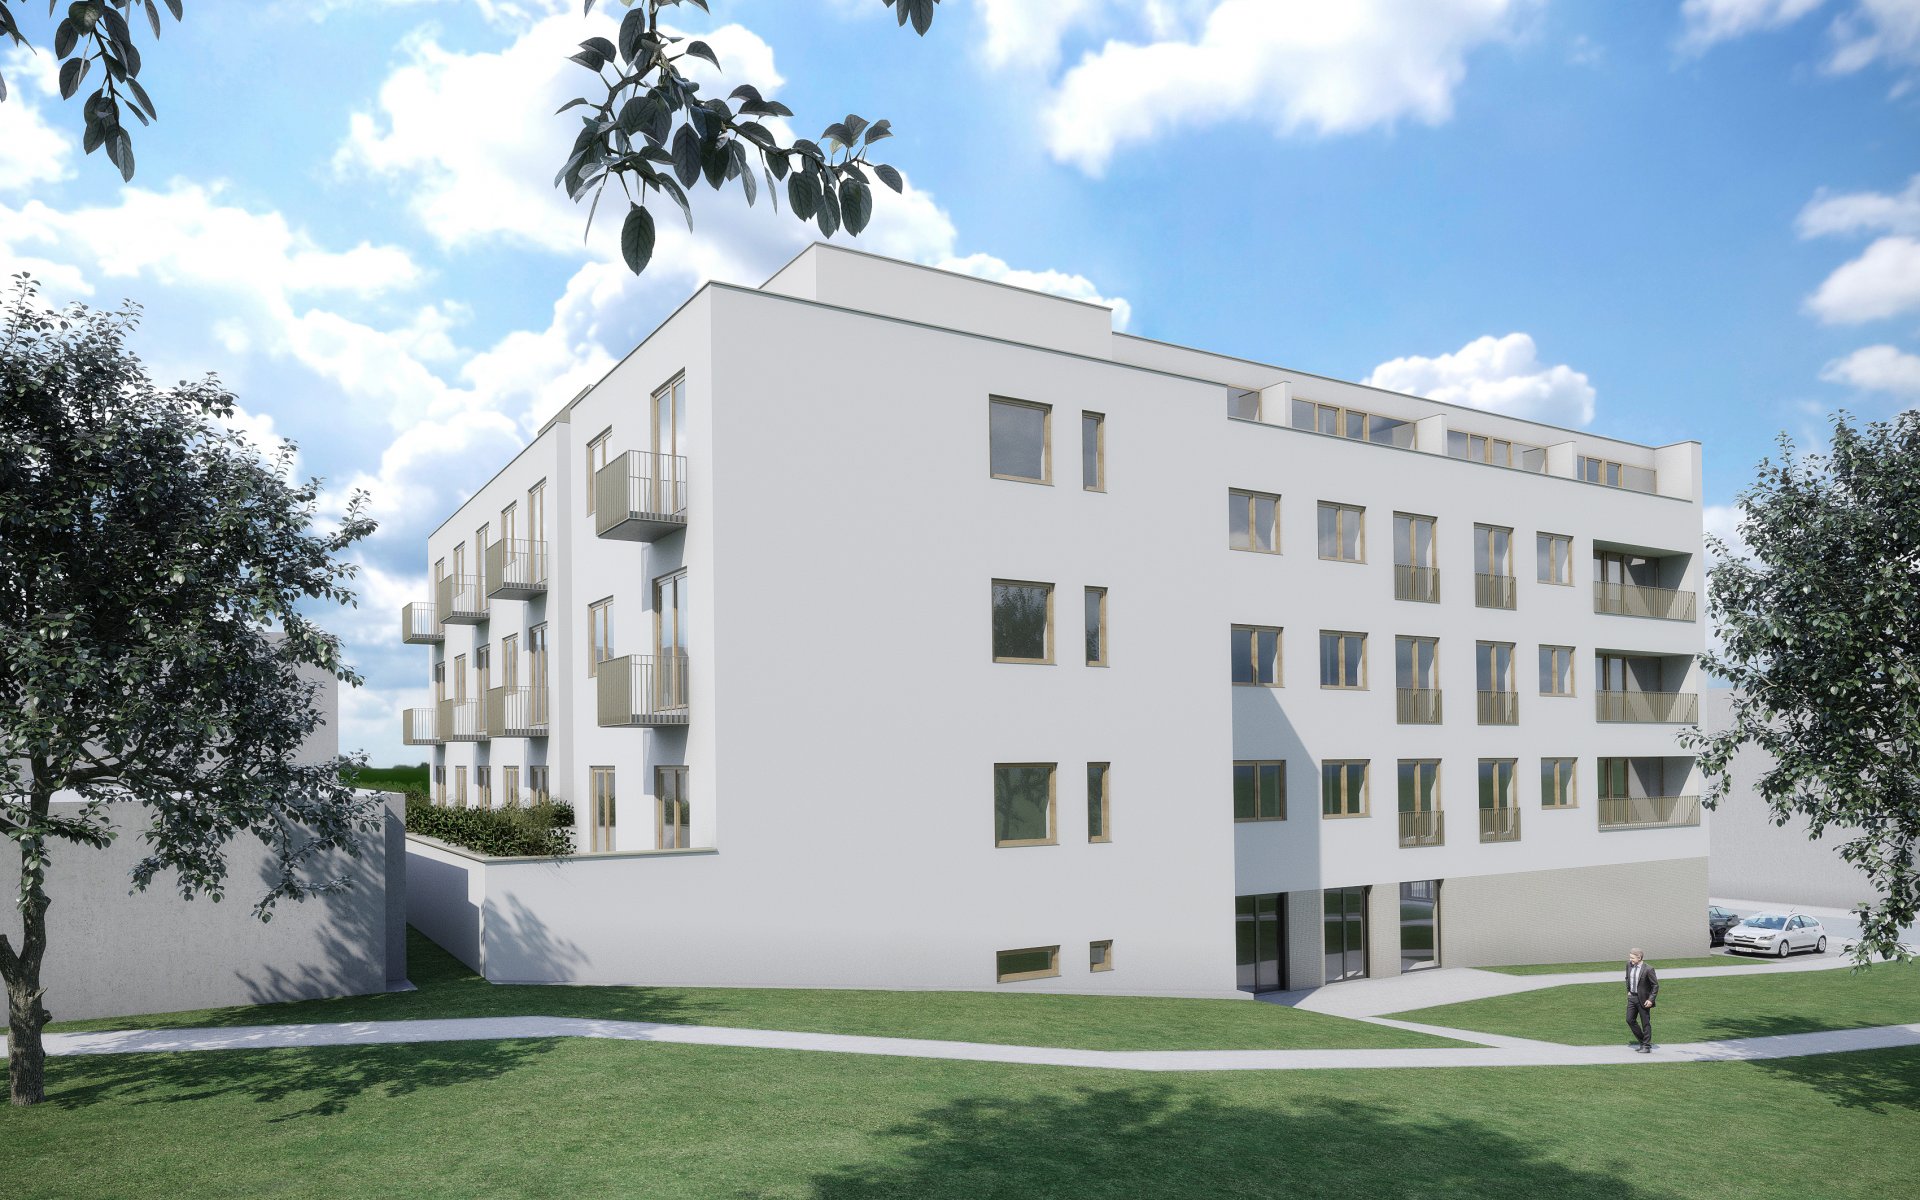 Zájemci o nové bydlení v Uherském Hradišti doplácí na nedostatek bytů. Situace se dlouhodobě nelepší